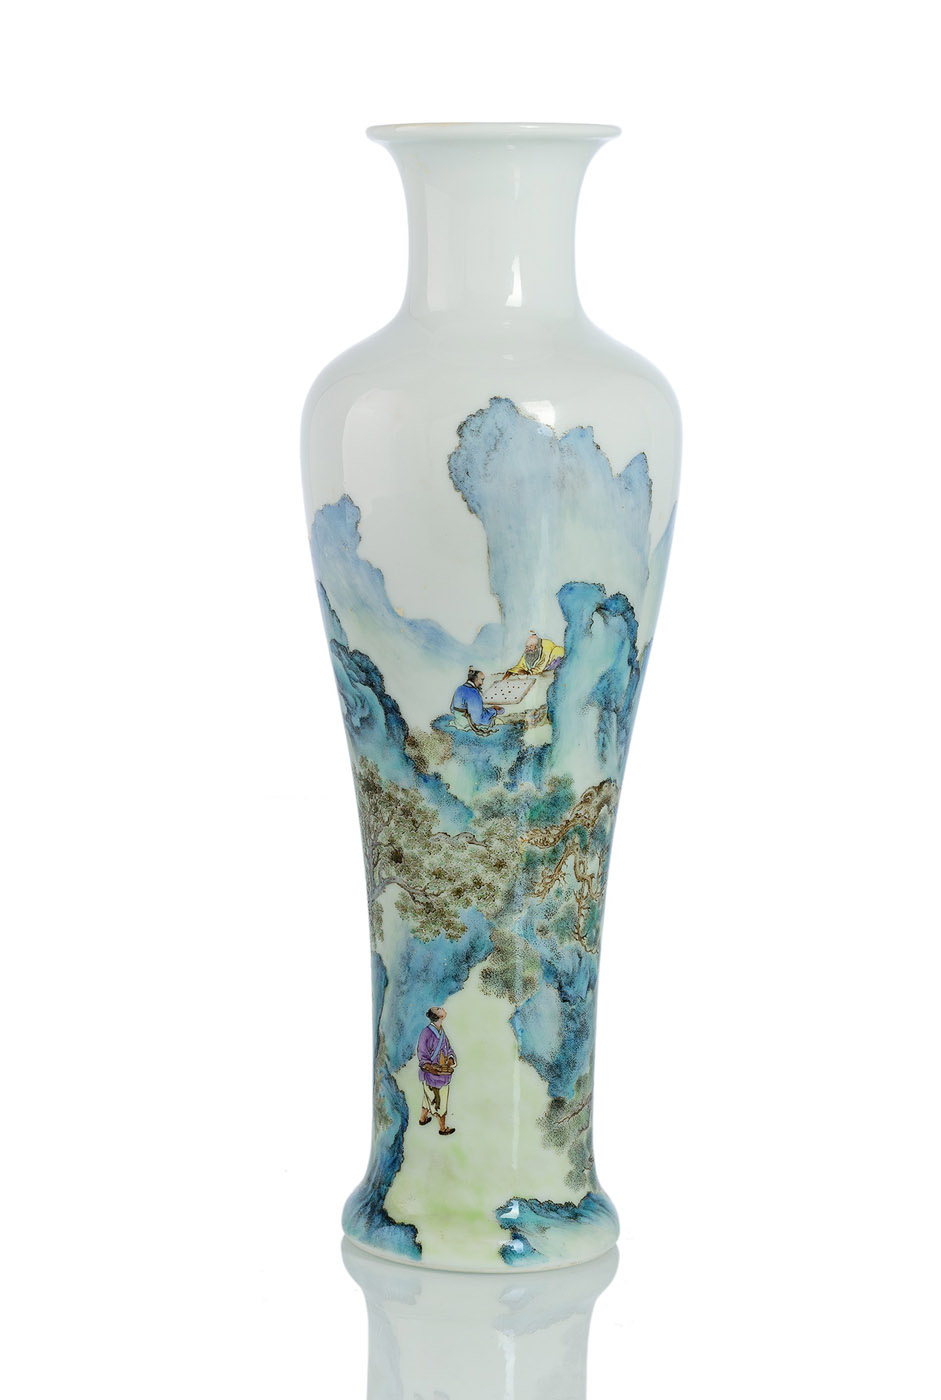 <b>Fein bemalte Vase aus Porzellan mit Go-Spielern und Diener in einer Berglandschaft</b>